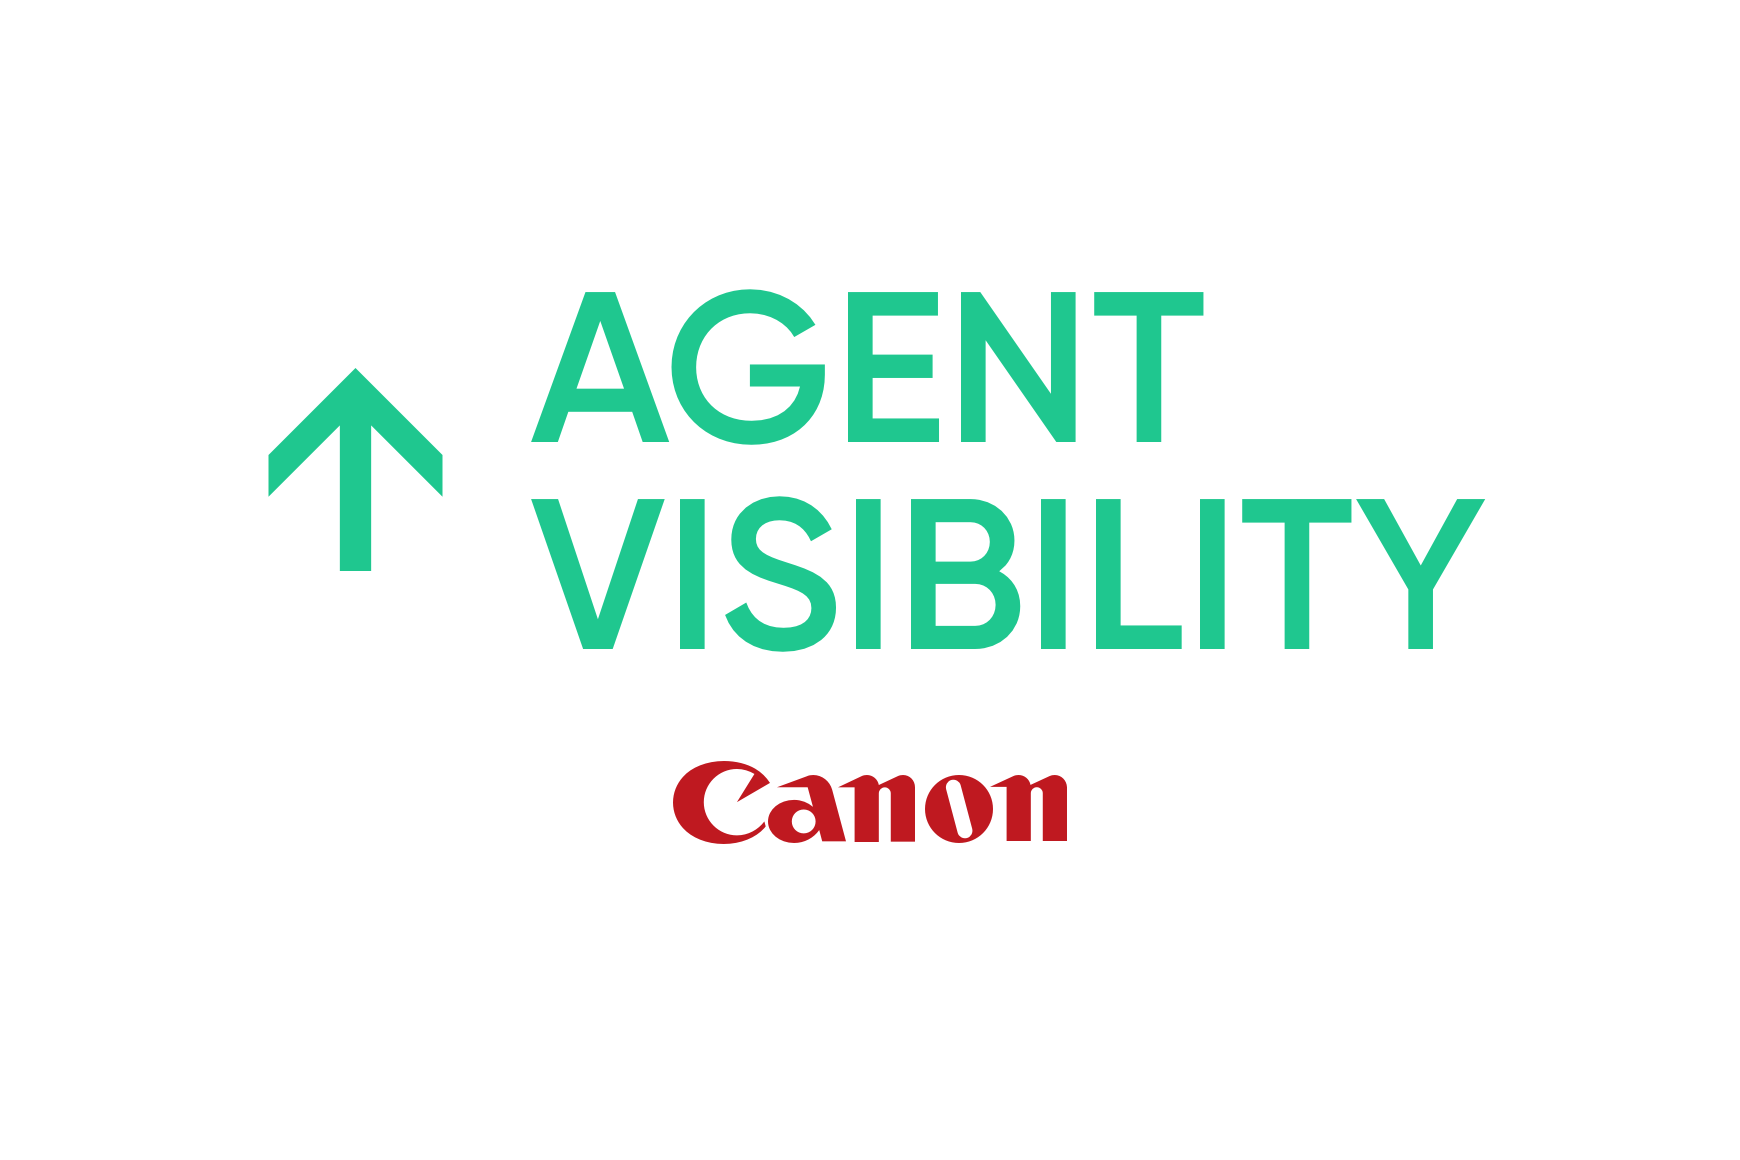 Canon: Verbesserte Produktivität und Visibilität der Agenten